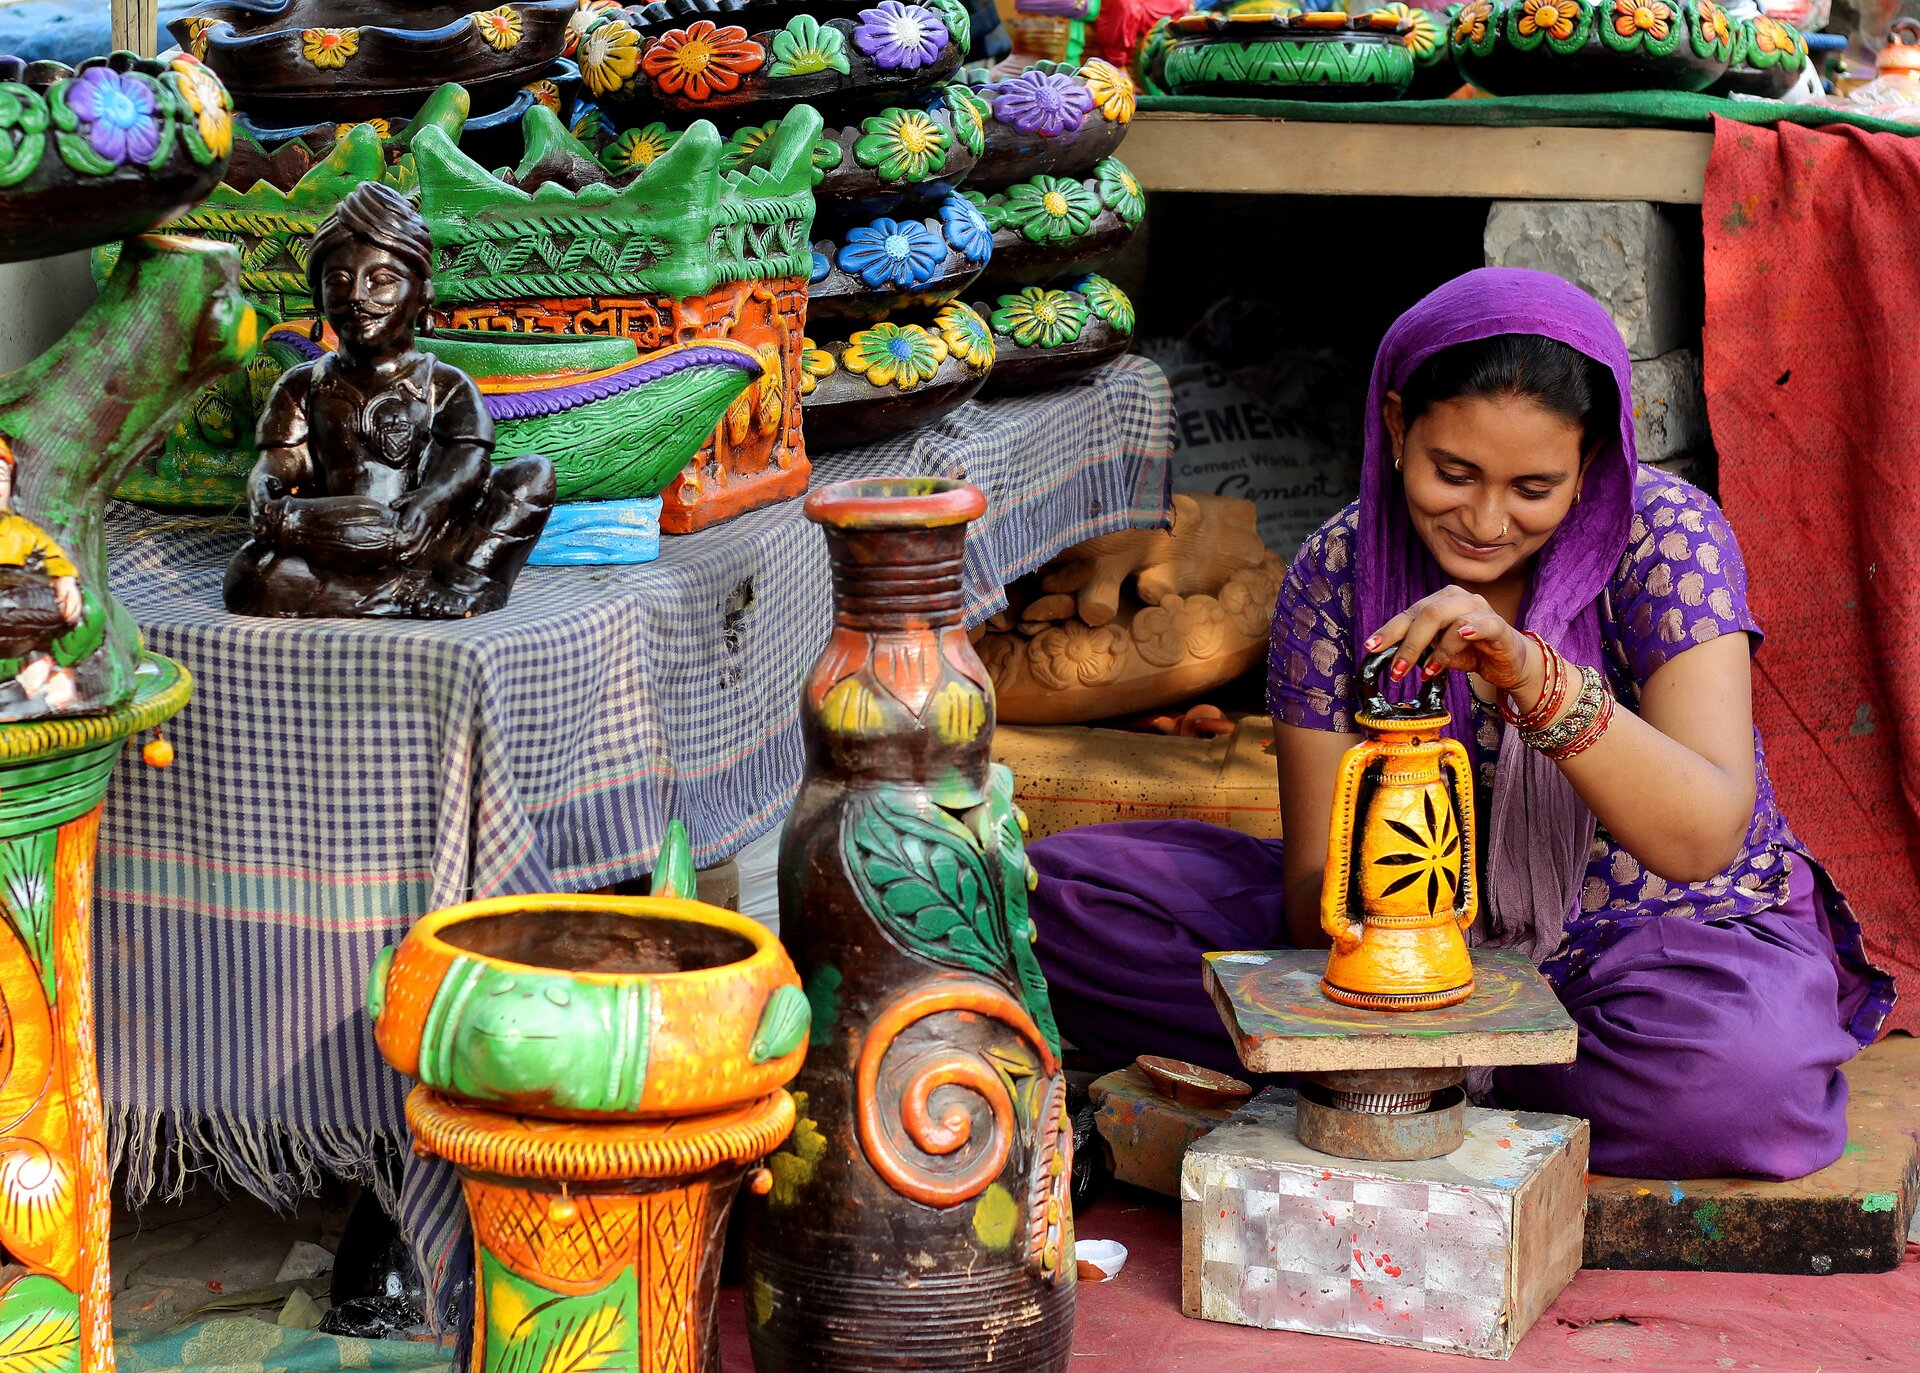 Ilustracja przedstawia hinduskę, która siedzi na ziemi. Kobieta ma czarne włosy, jest uśmiechnięta. Kobieta na lewej ręce ubrane ma bransoletki. Ubrana jest w fioletowy kombinezon a dookoła niej znajdują się ceramiczne elementy m.in. wazony i figurki. Wszystkie elementy są kolorowe. Na zdjęciu dominują kolory pomarańczowy, zielony oraz fioletowy.